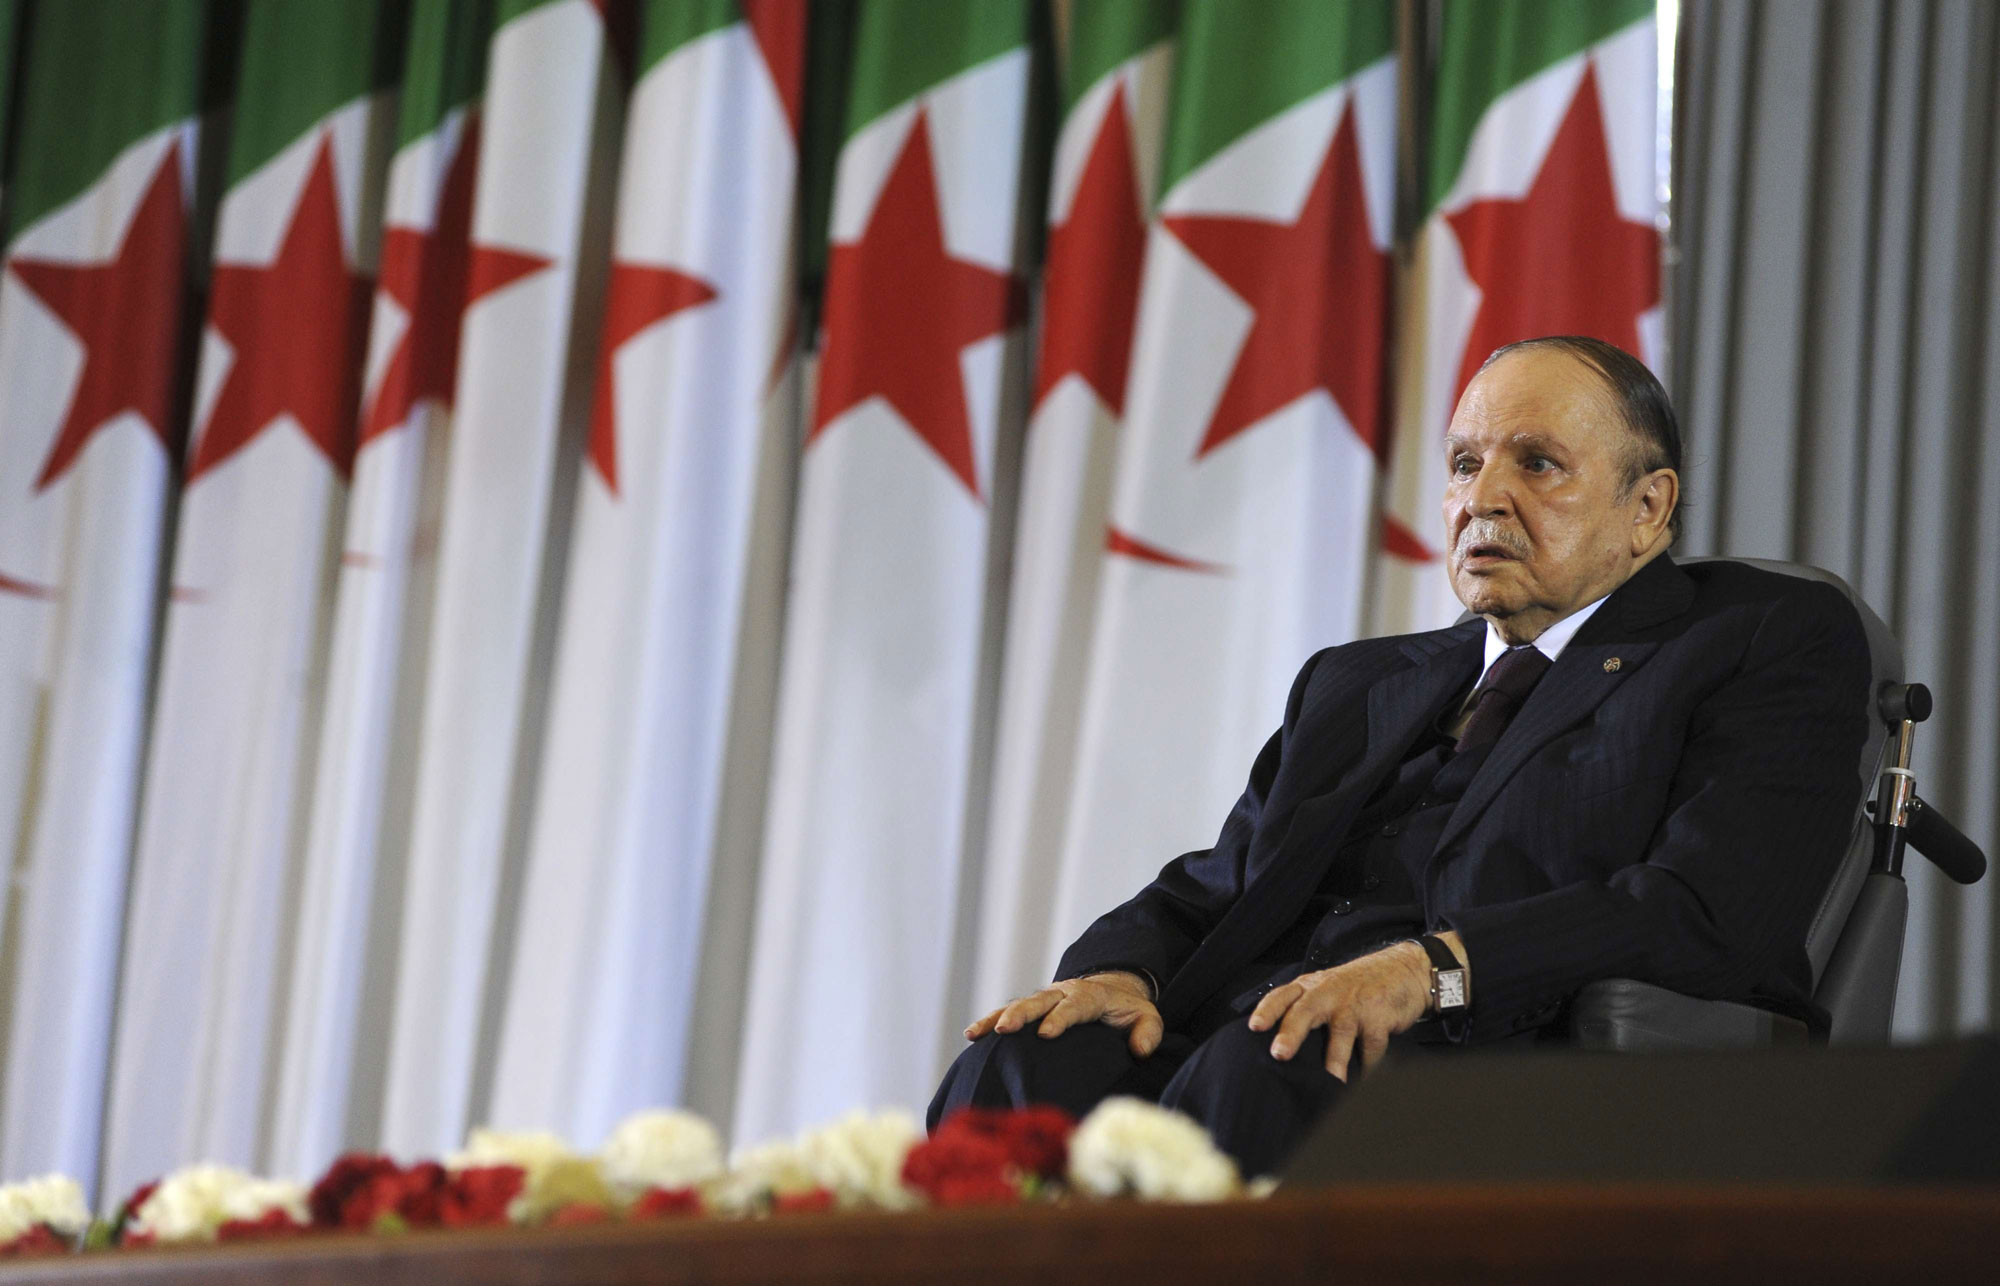 الرئيس الجزائري عبدالعزيز بوتفليقة يهرب إلى الأمام في مواجهة احتجاجات لا تهدأ